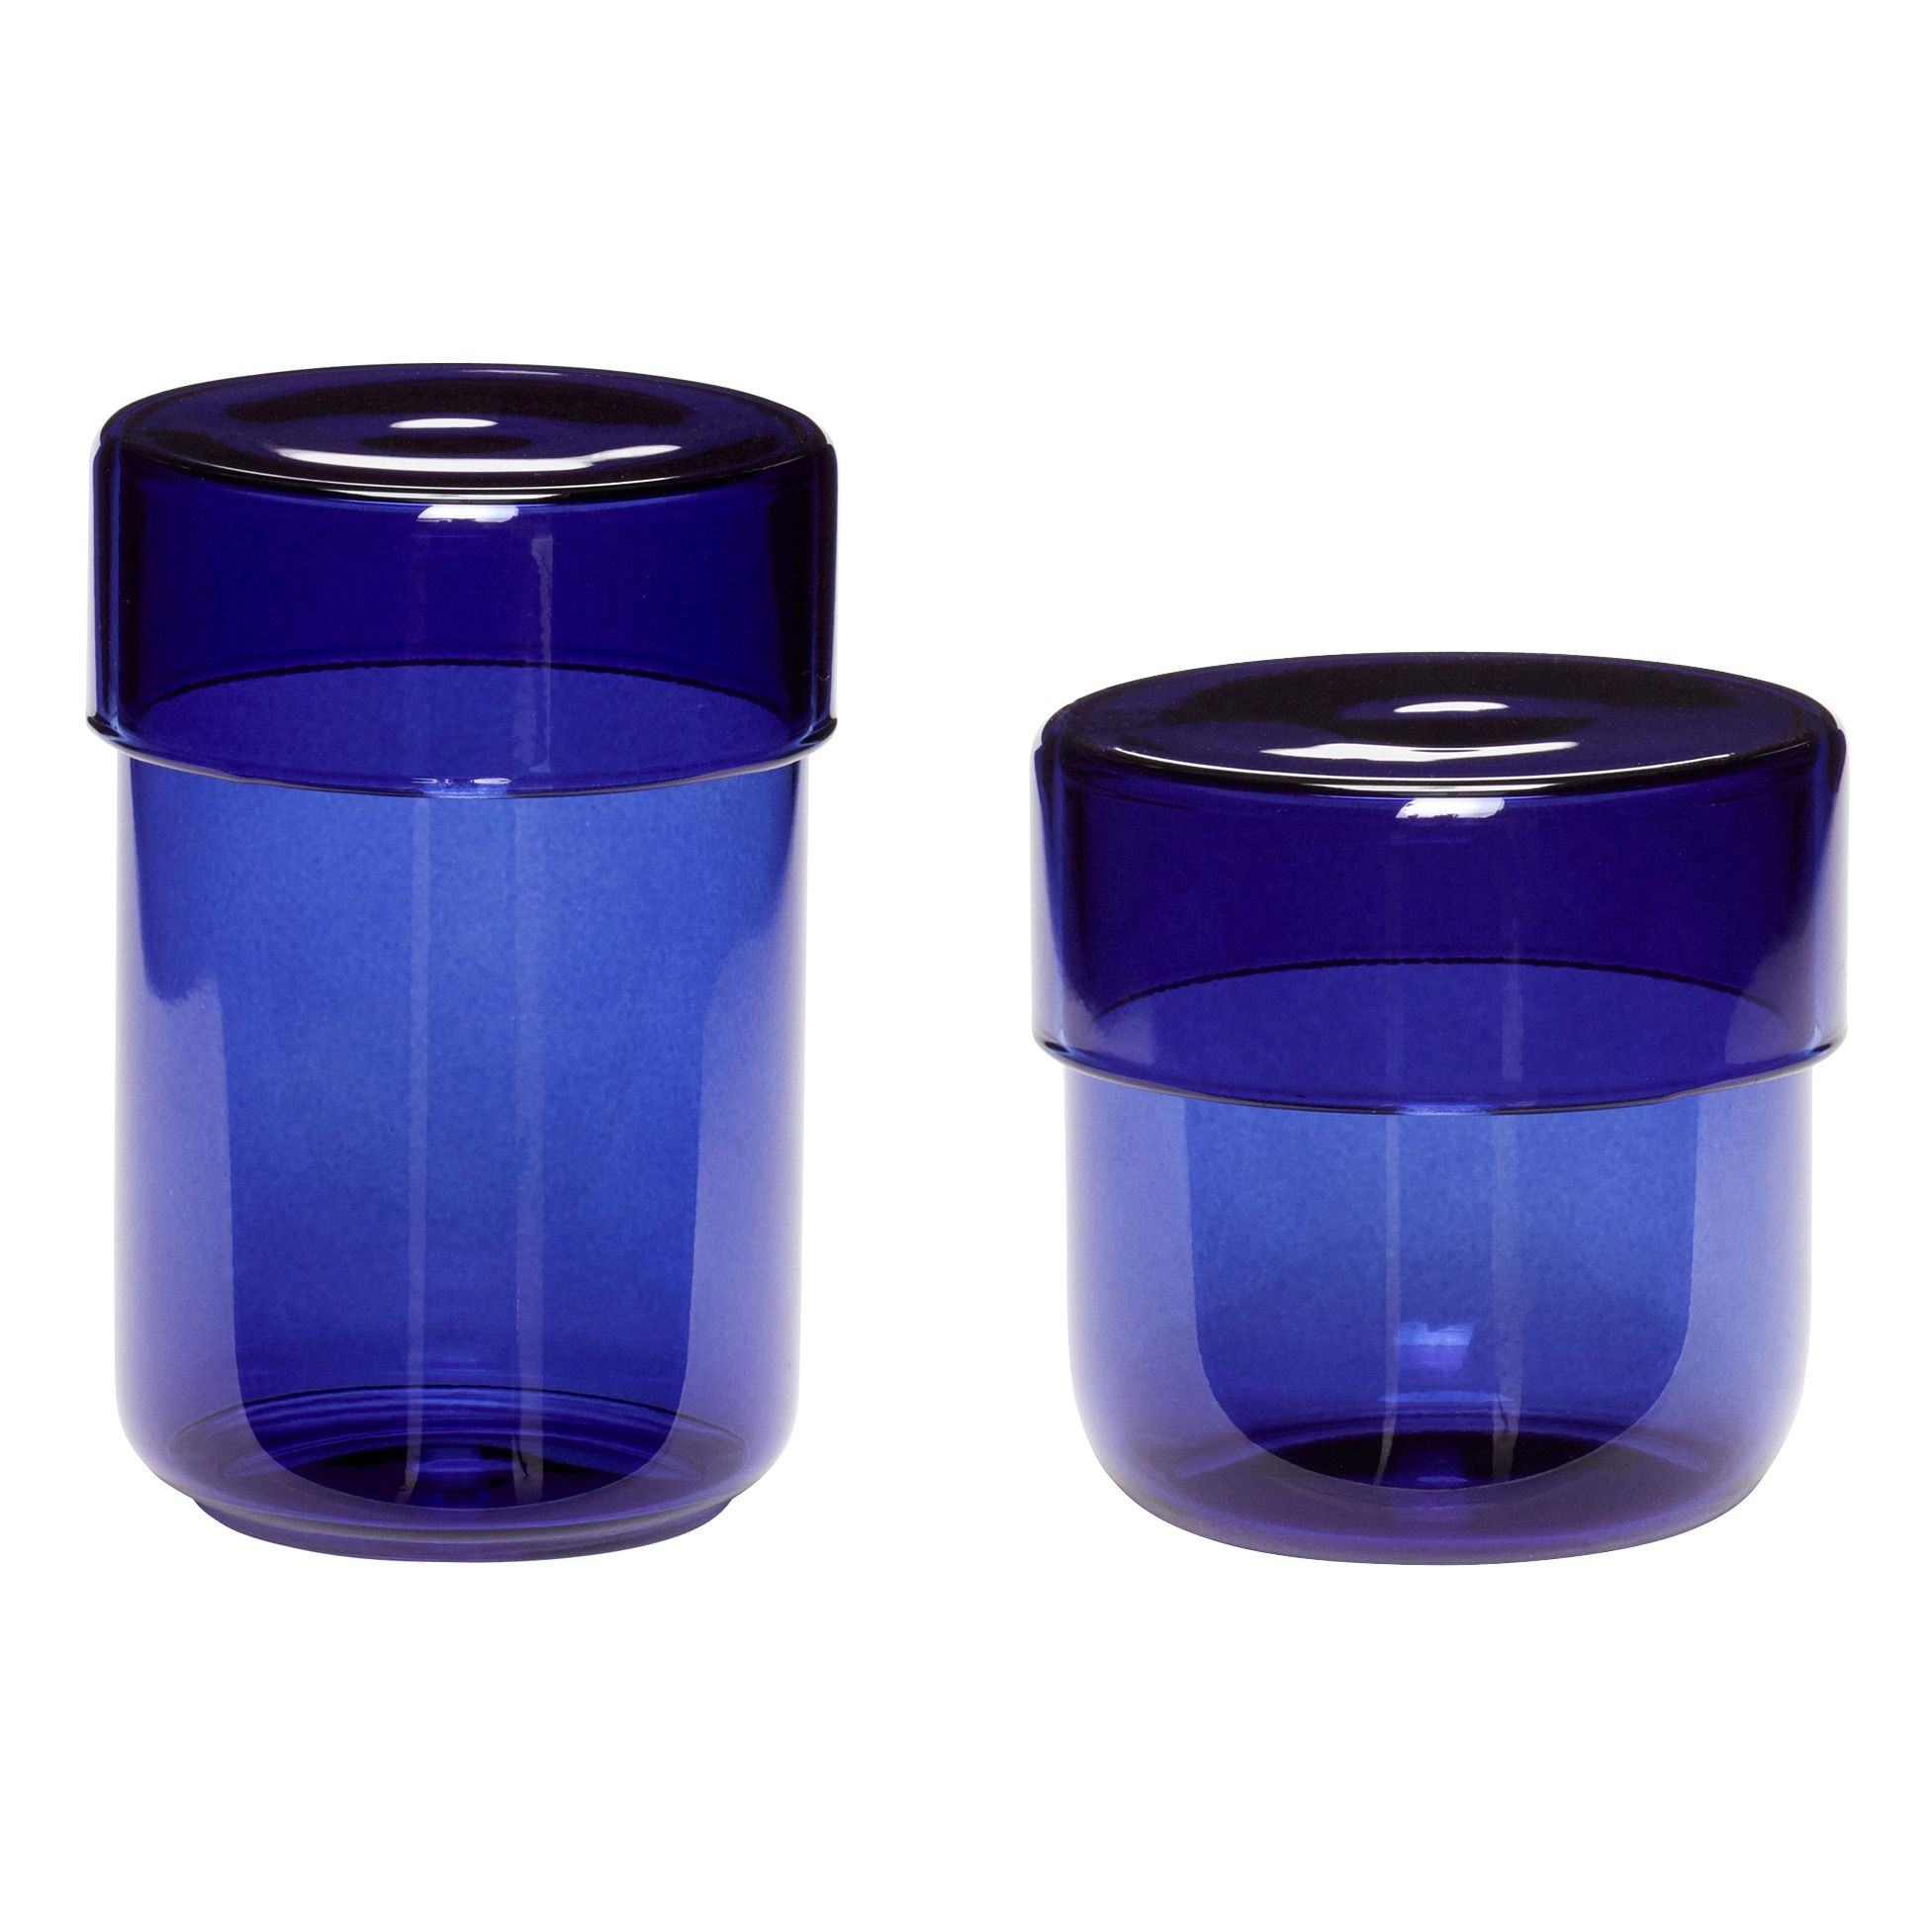 Hubsch - Pot en verre - Set de 2 - Bleu